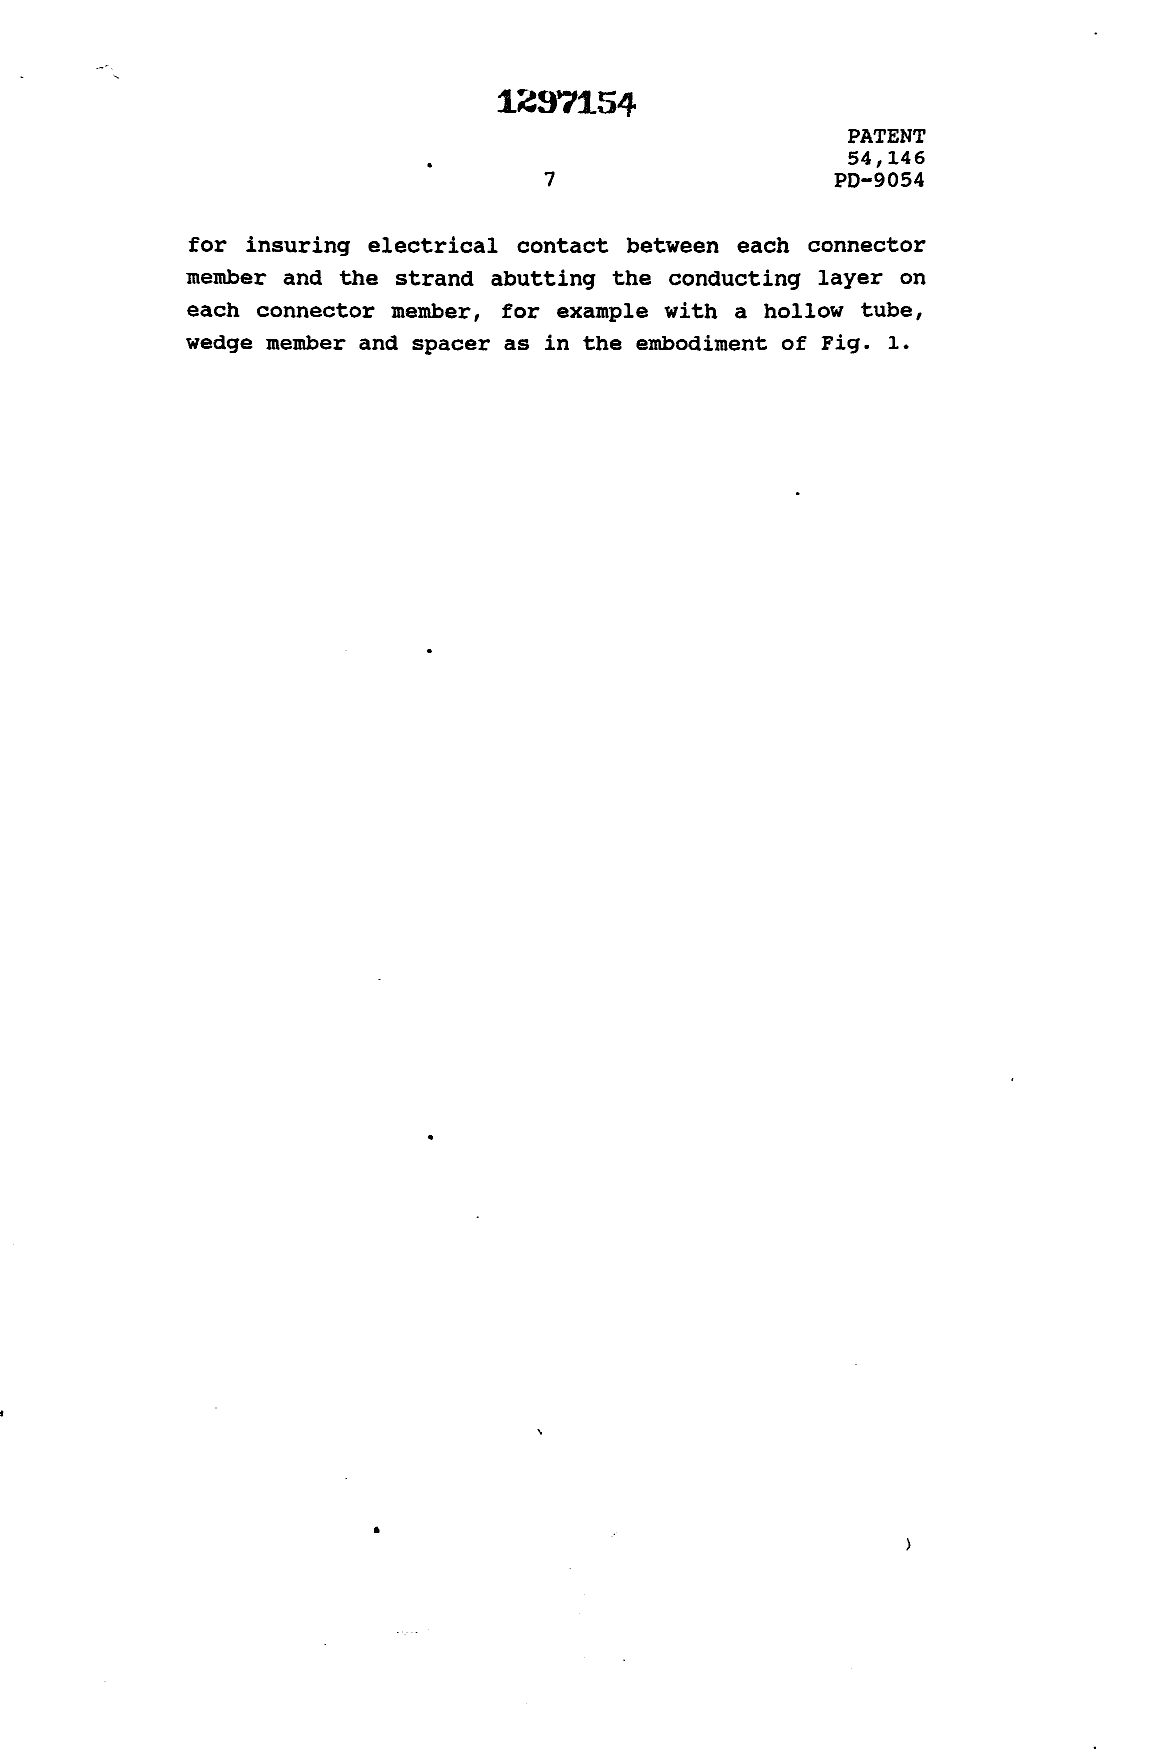 Canadian Patent Document 1297154. Description 19931027. Image 7 of 7